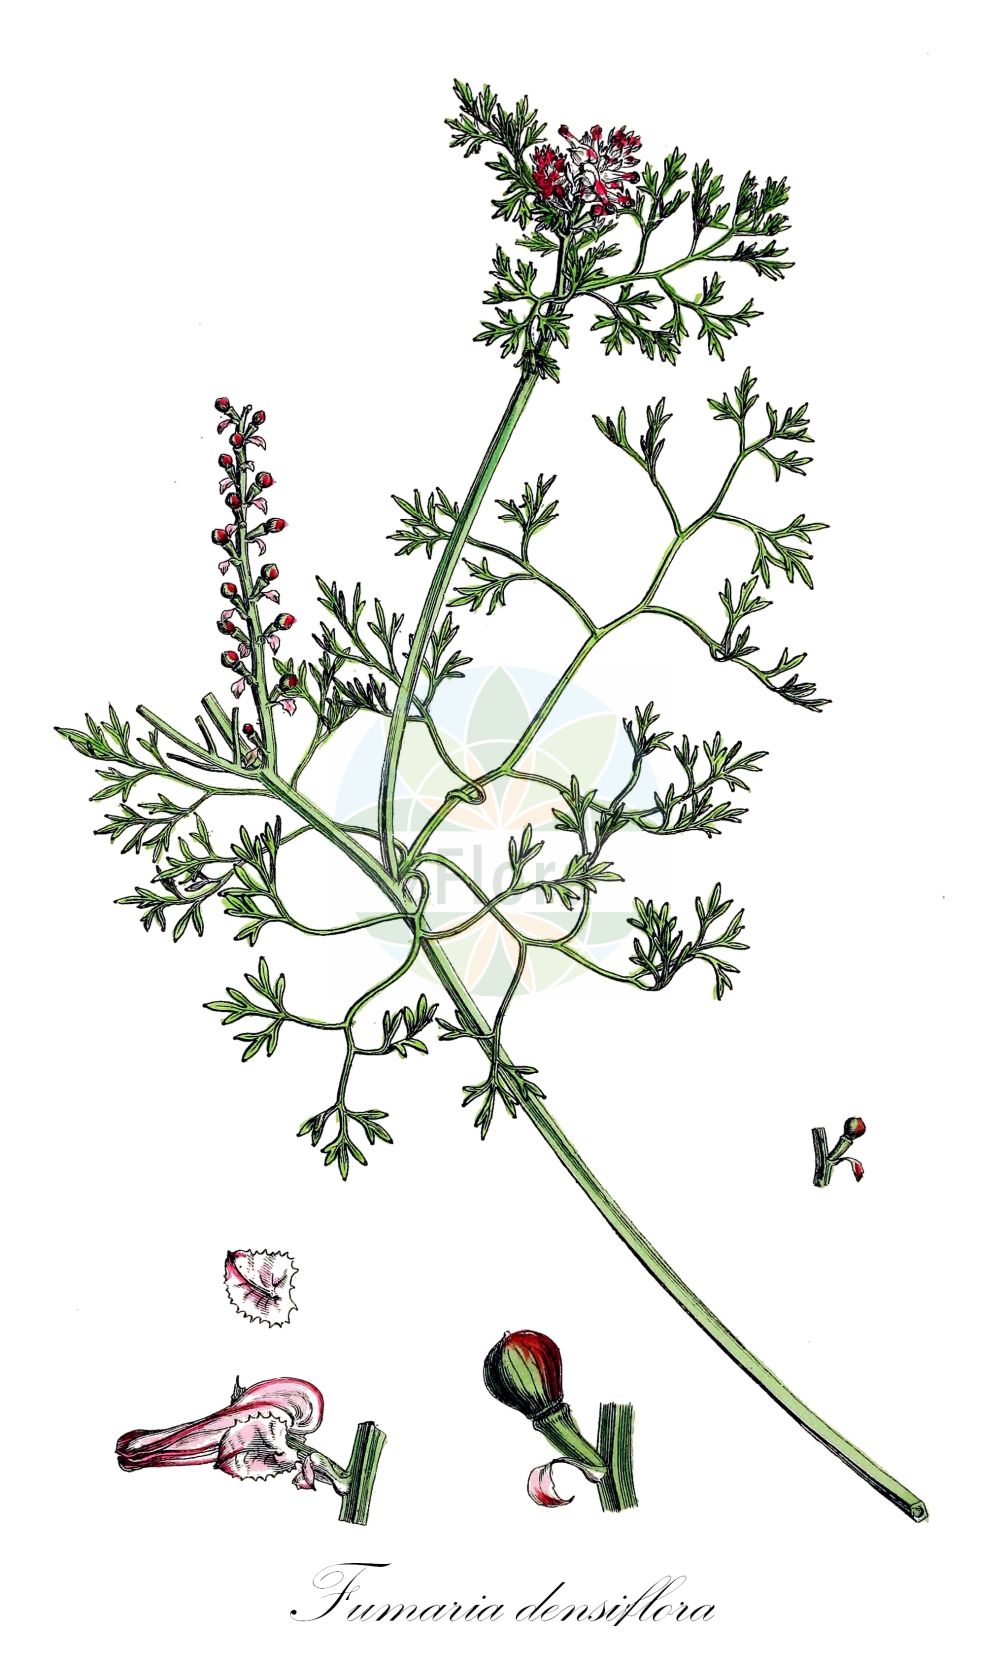 Historische Abbildung von Fumaria densiflora (Dense-flowered Fumitory). Das Bild zeigt Blatt, Bluete, Frucht und Same. ---- Historical Drawing of Fumaria densiflora (Dense-flowered Fumitory). The image is showing leaf, flower, fruit and seed.(Fumaria densiflora,Dense-flowered Fumitory,Fumaria micrantha,Fumaria obtusisepala,Fumaria densiflora,Fumaria,Erdrauch,Fumitory,Papaveraceae,Mohngewächse,Poppy family,Blatt,Bluete,Frucht,Same,leaf,flower,fruit,seed,Sowerby (1790-1813))